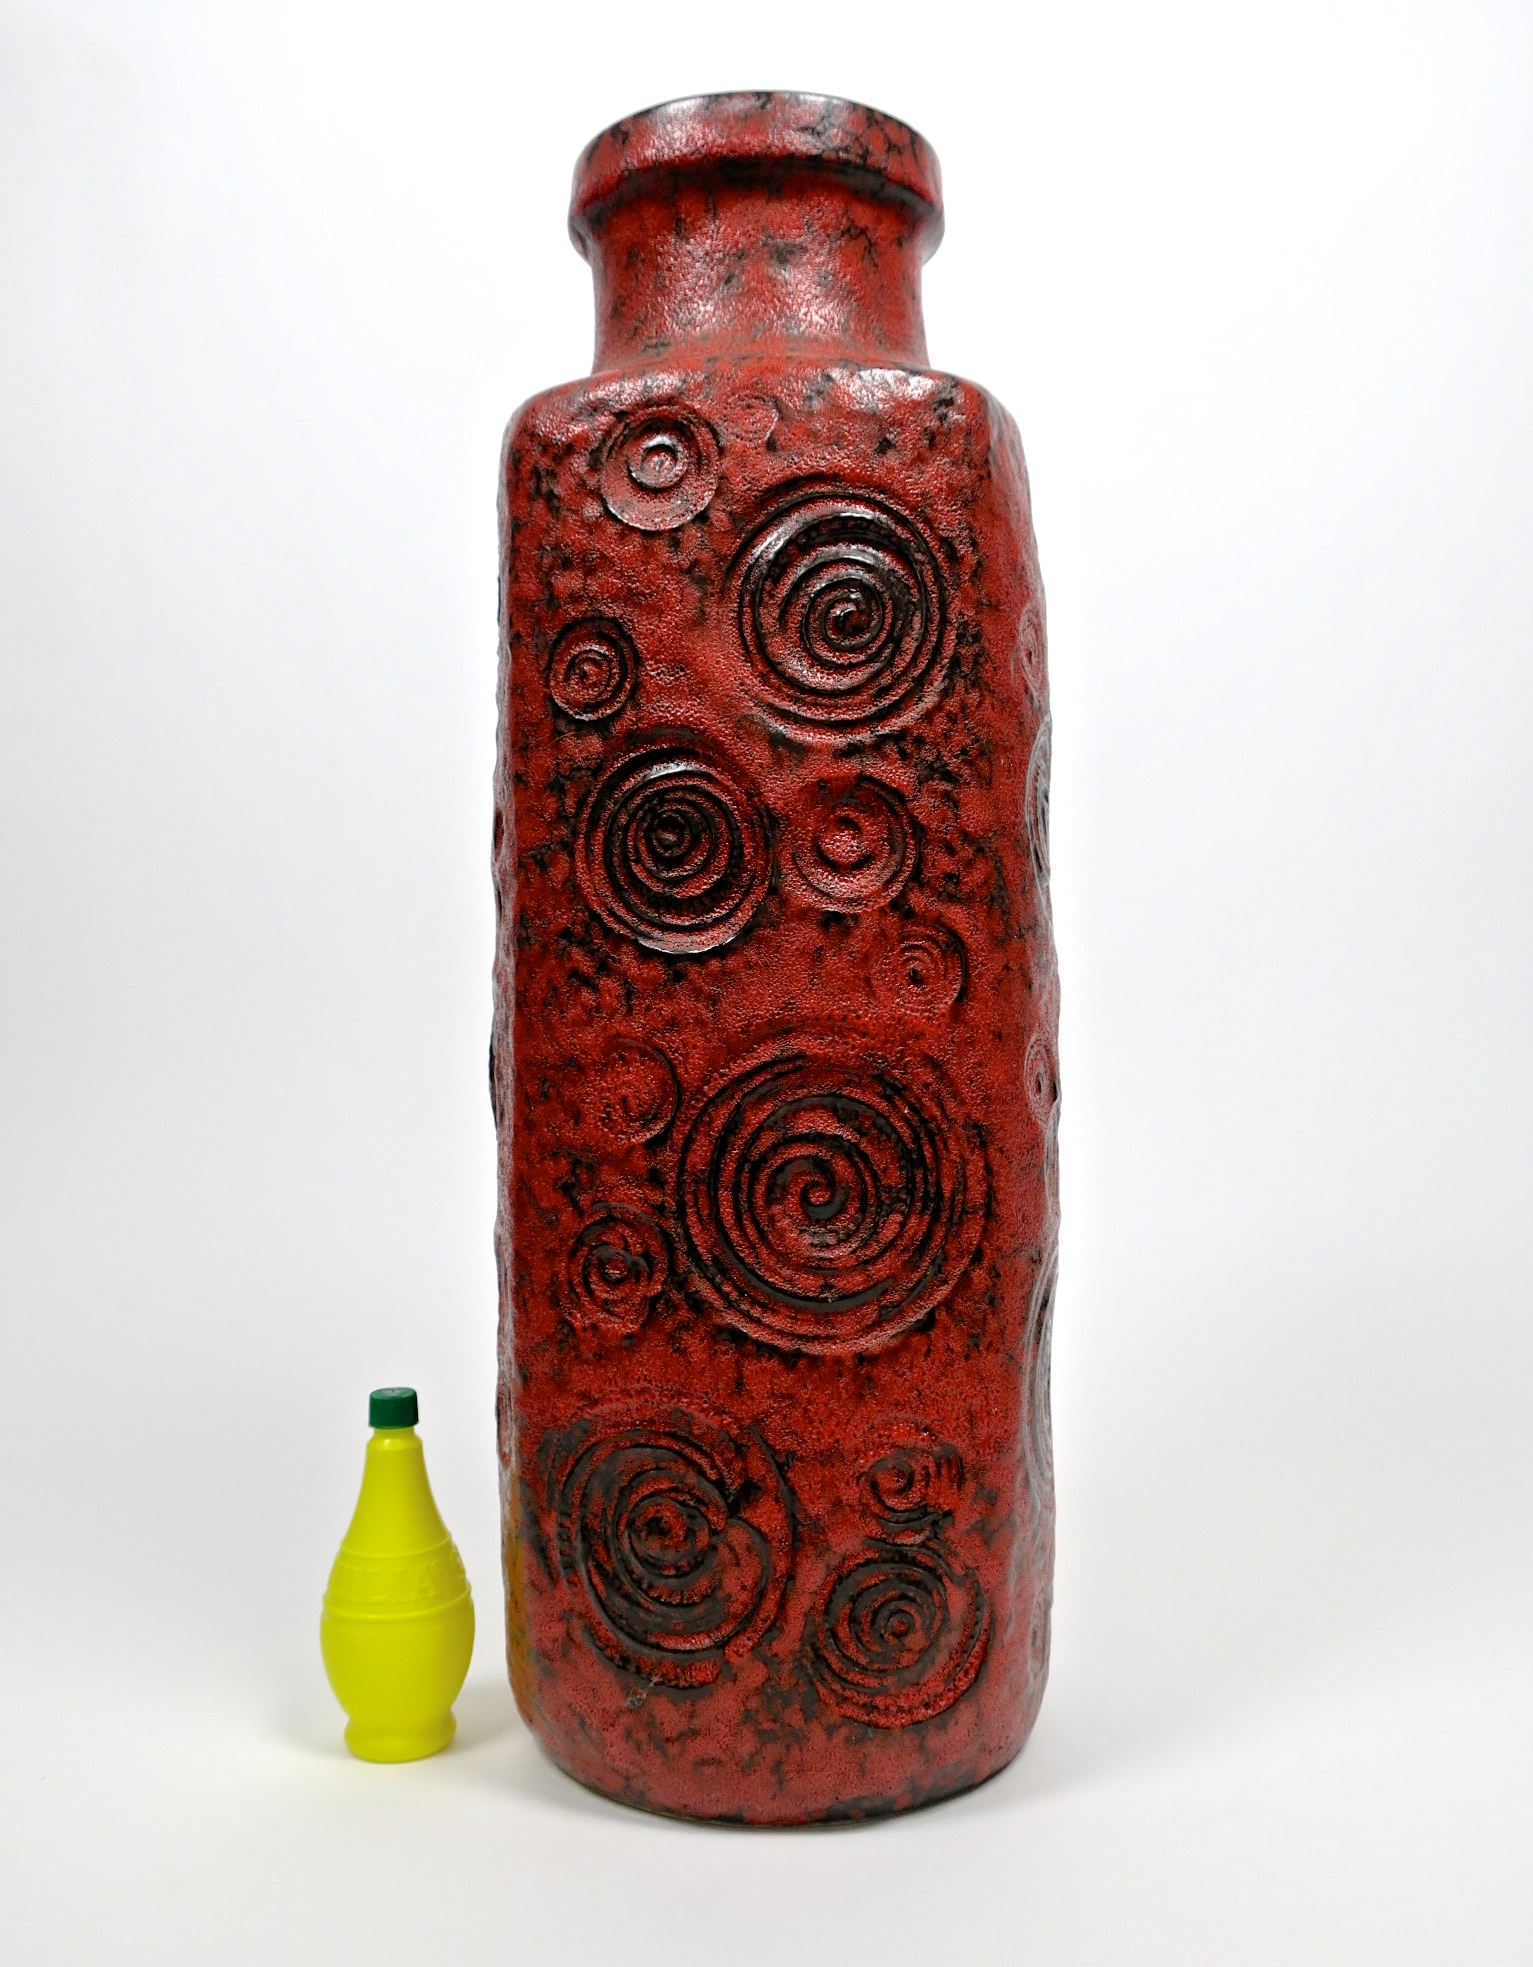 helica spirale céramique keramik vase bodenvase floorvase midcentury interior designer inneneinrichtung kaufmuseum geschenke